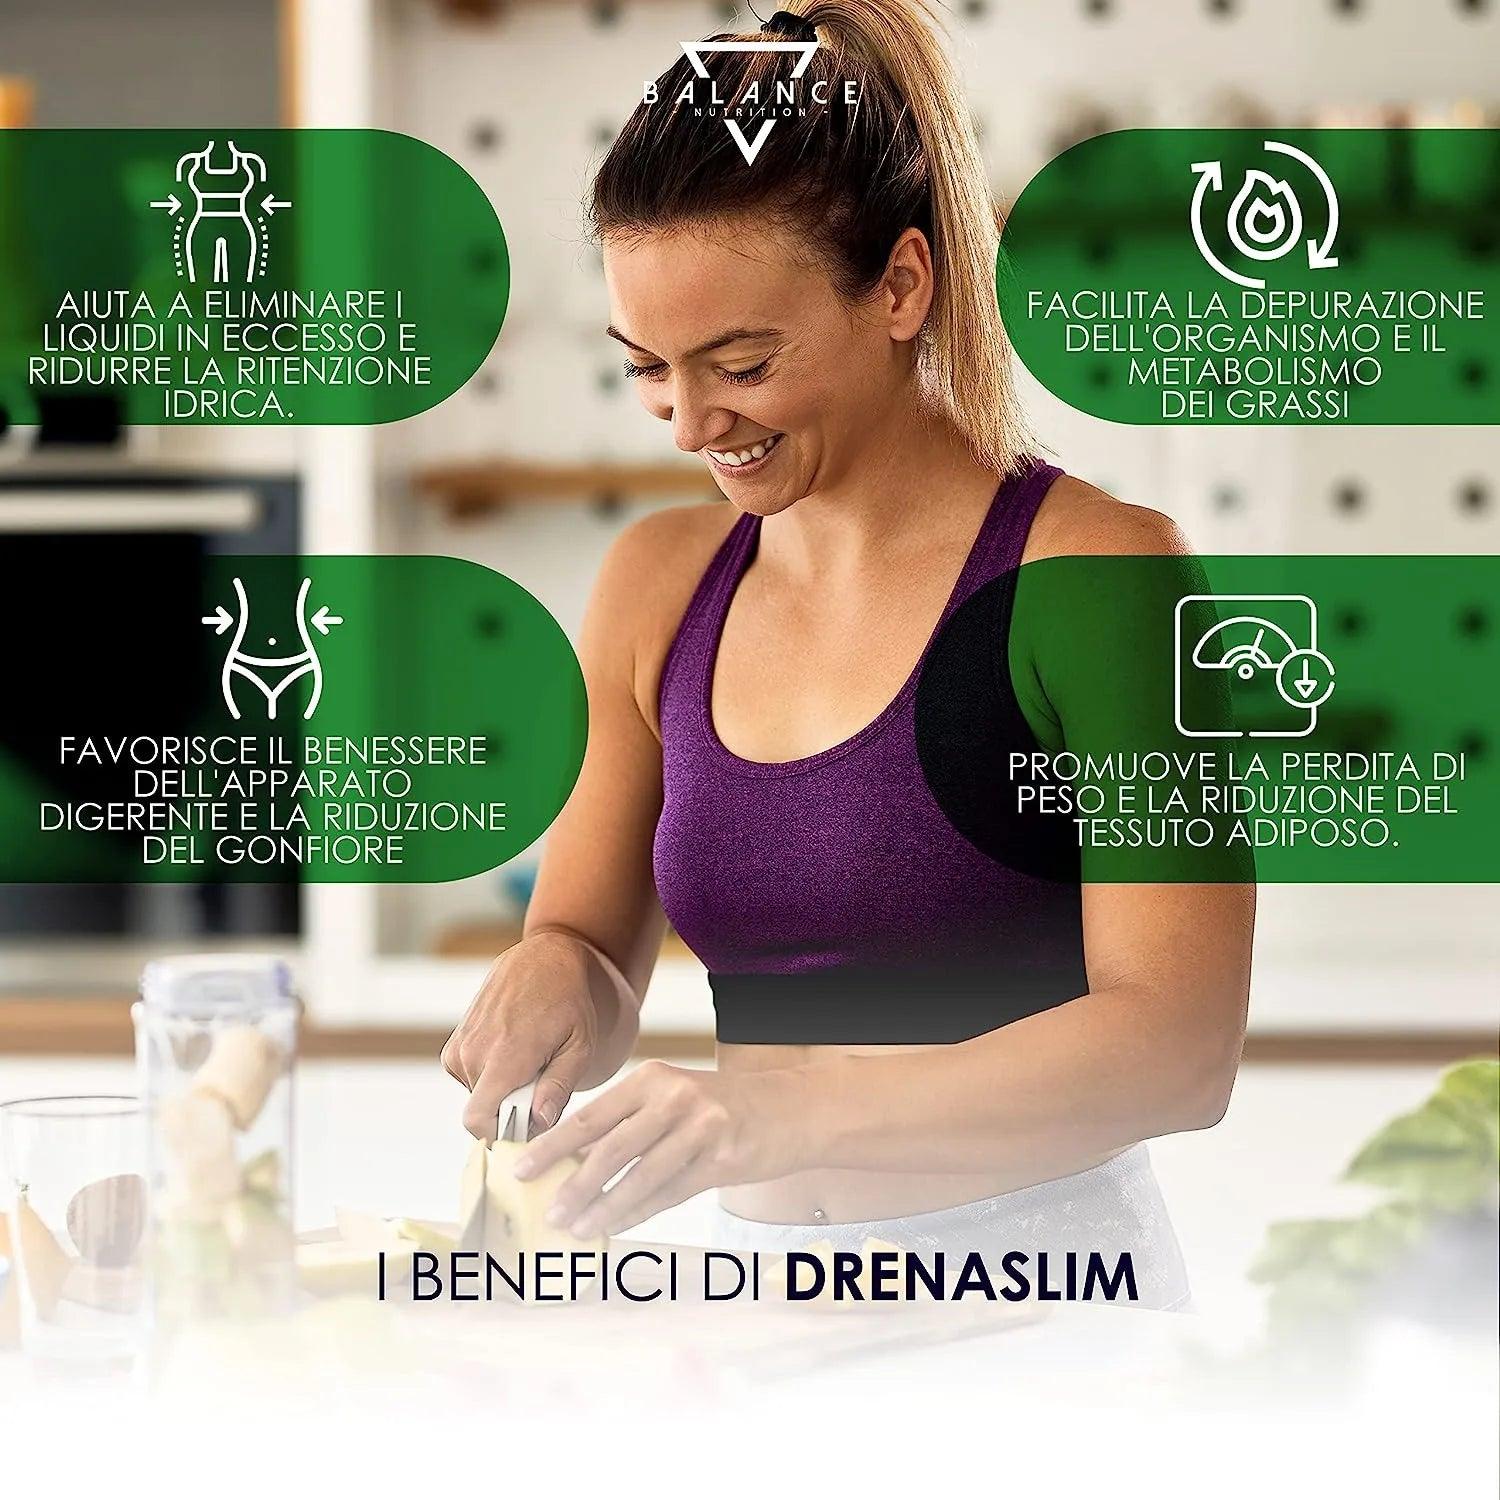 DRENASLIM - Integratore Alimentare per favorire il Drenaggio dei Liquidi e contrastare gli Inestetismi della Cellulite - Balance Nutrition